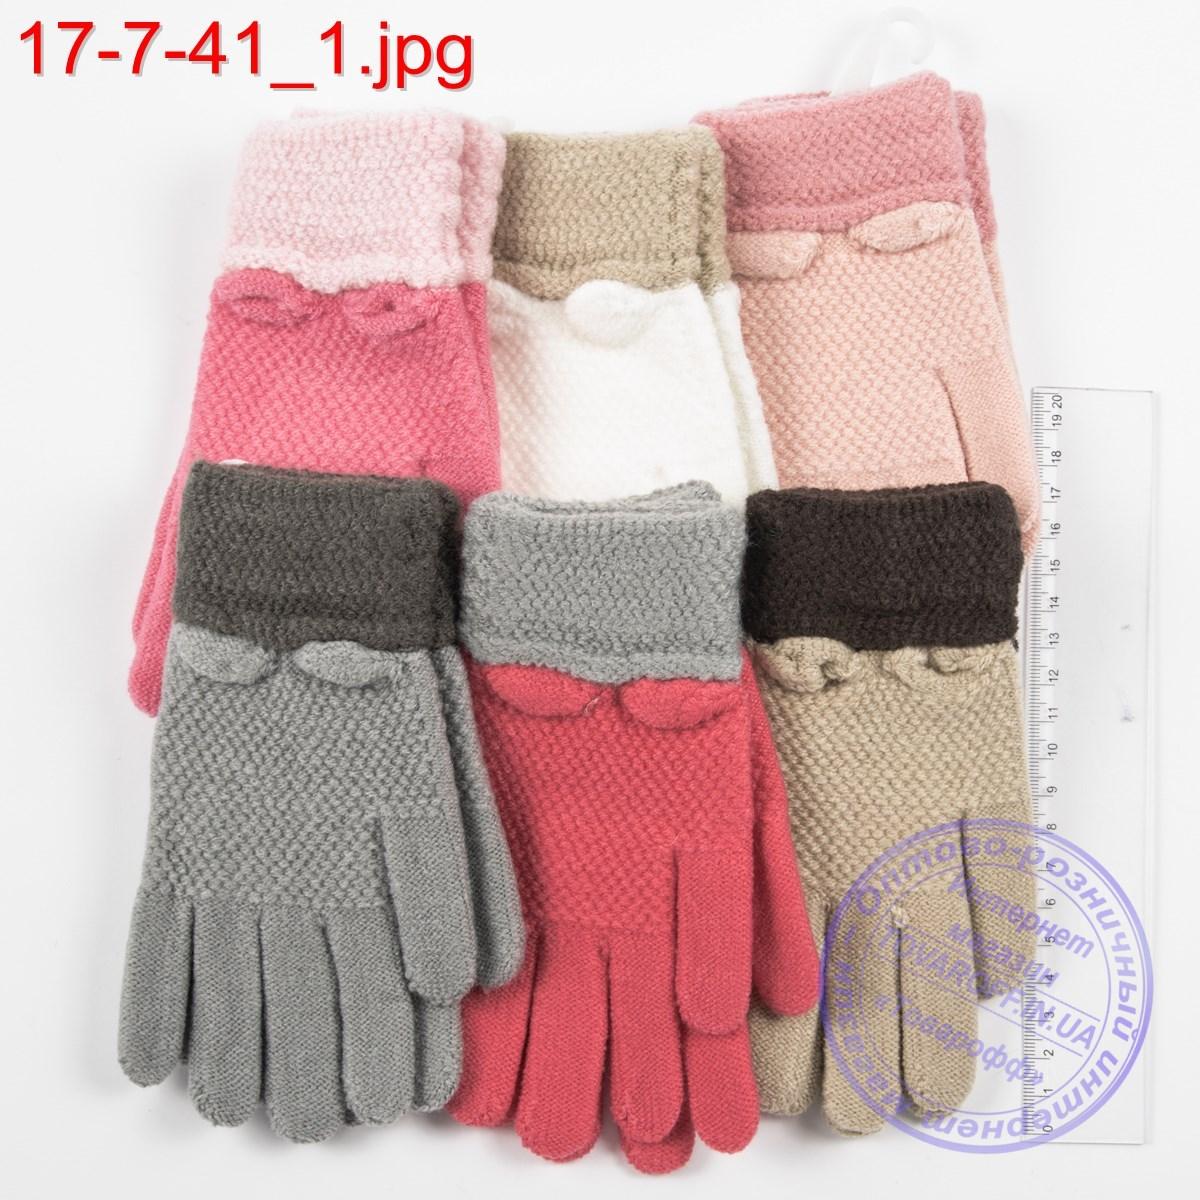 Оптом в'язані рукавички для дівчаток 4, 5, 6 років - №17-7-41